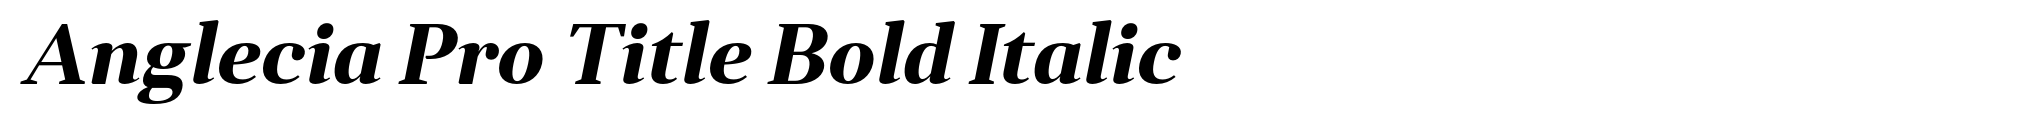 Anglecia Pro Title Bold Italic image